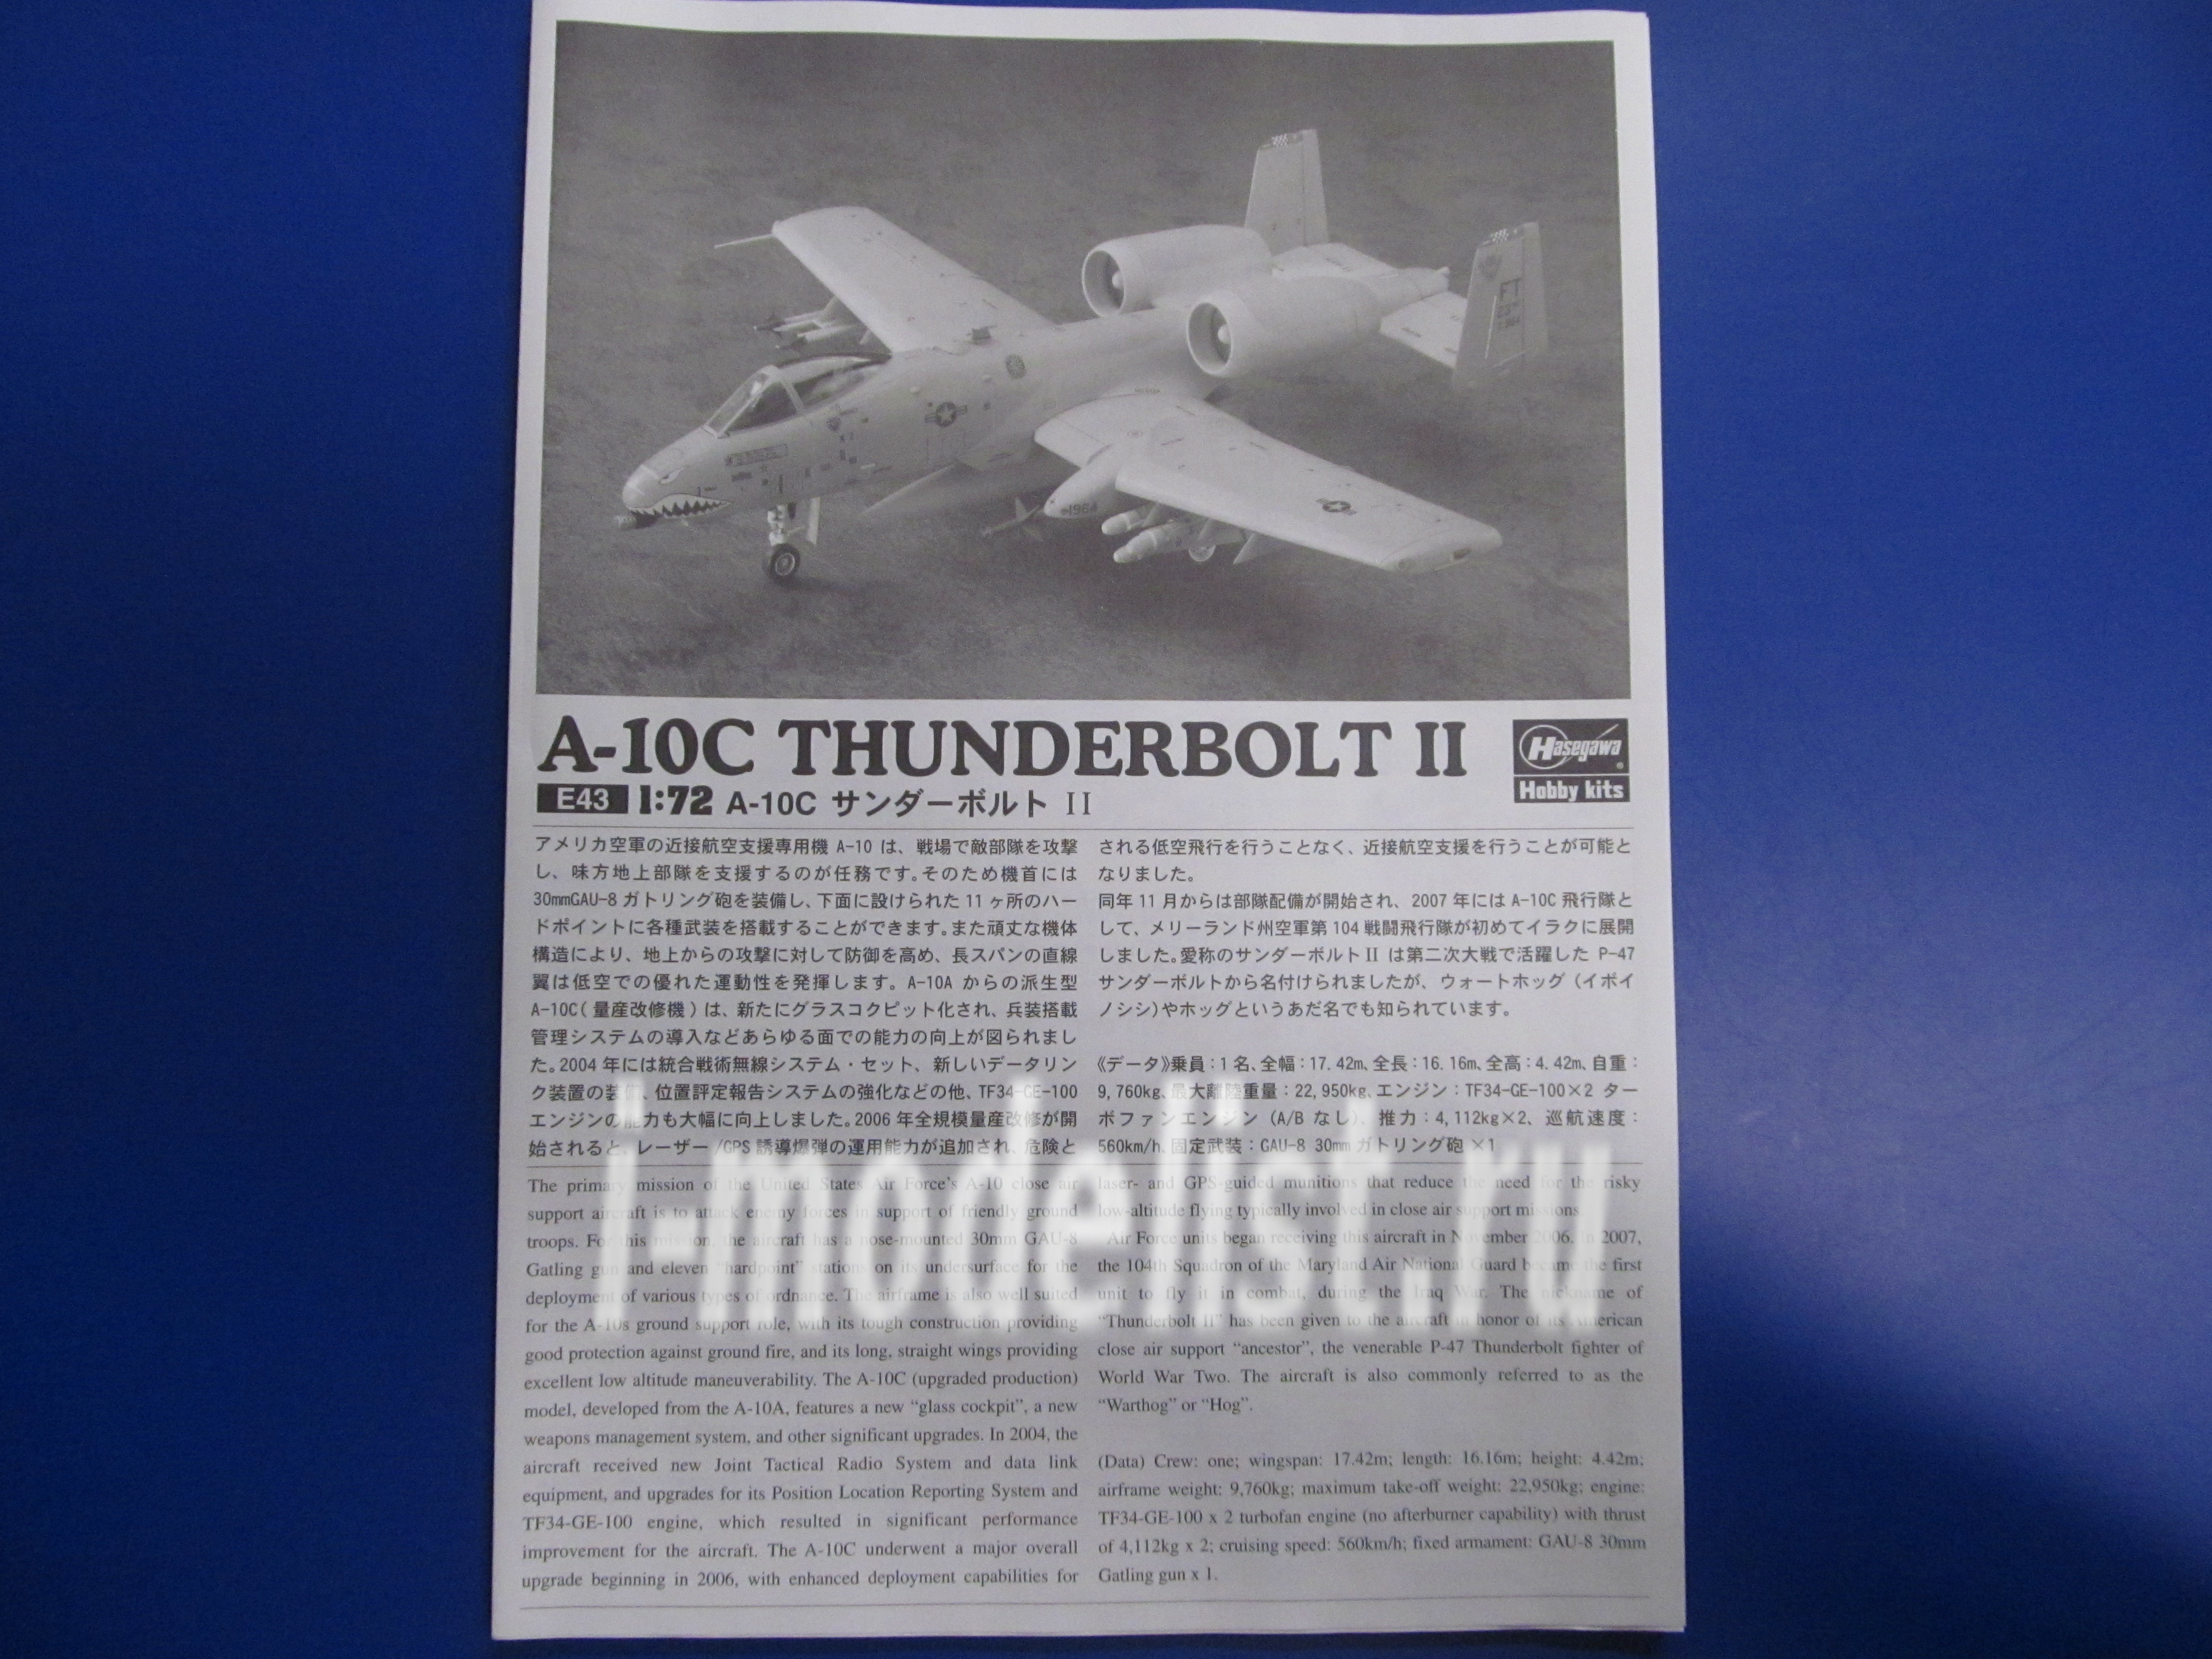 01573 Hasegawa 1/72 A-10C Thunderbolt II